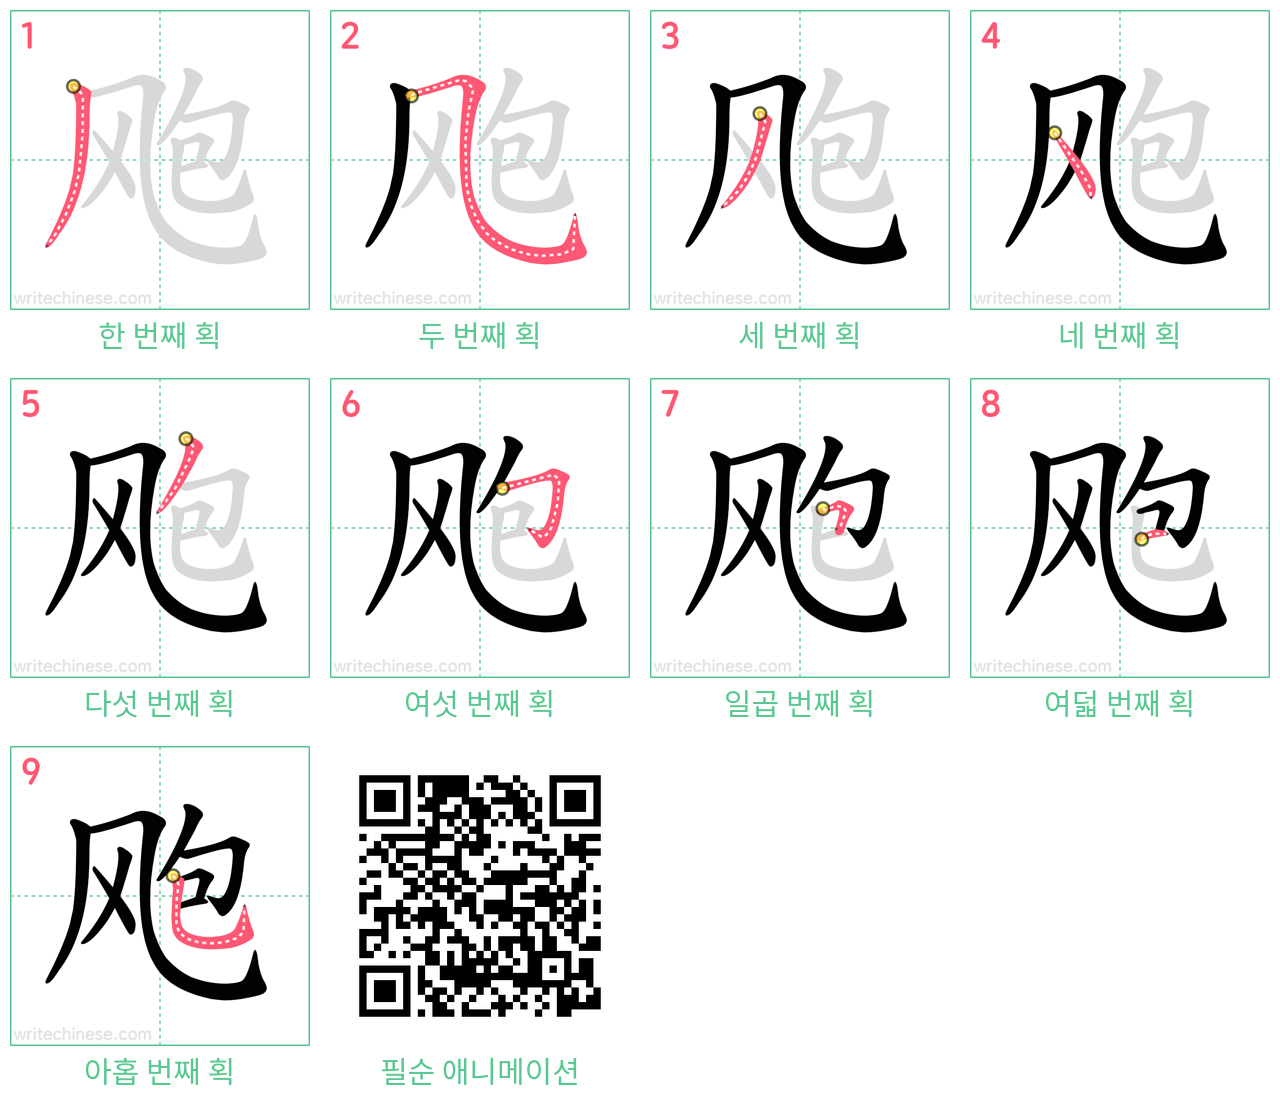 飑 step-by-step stroke order diagrams